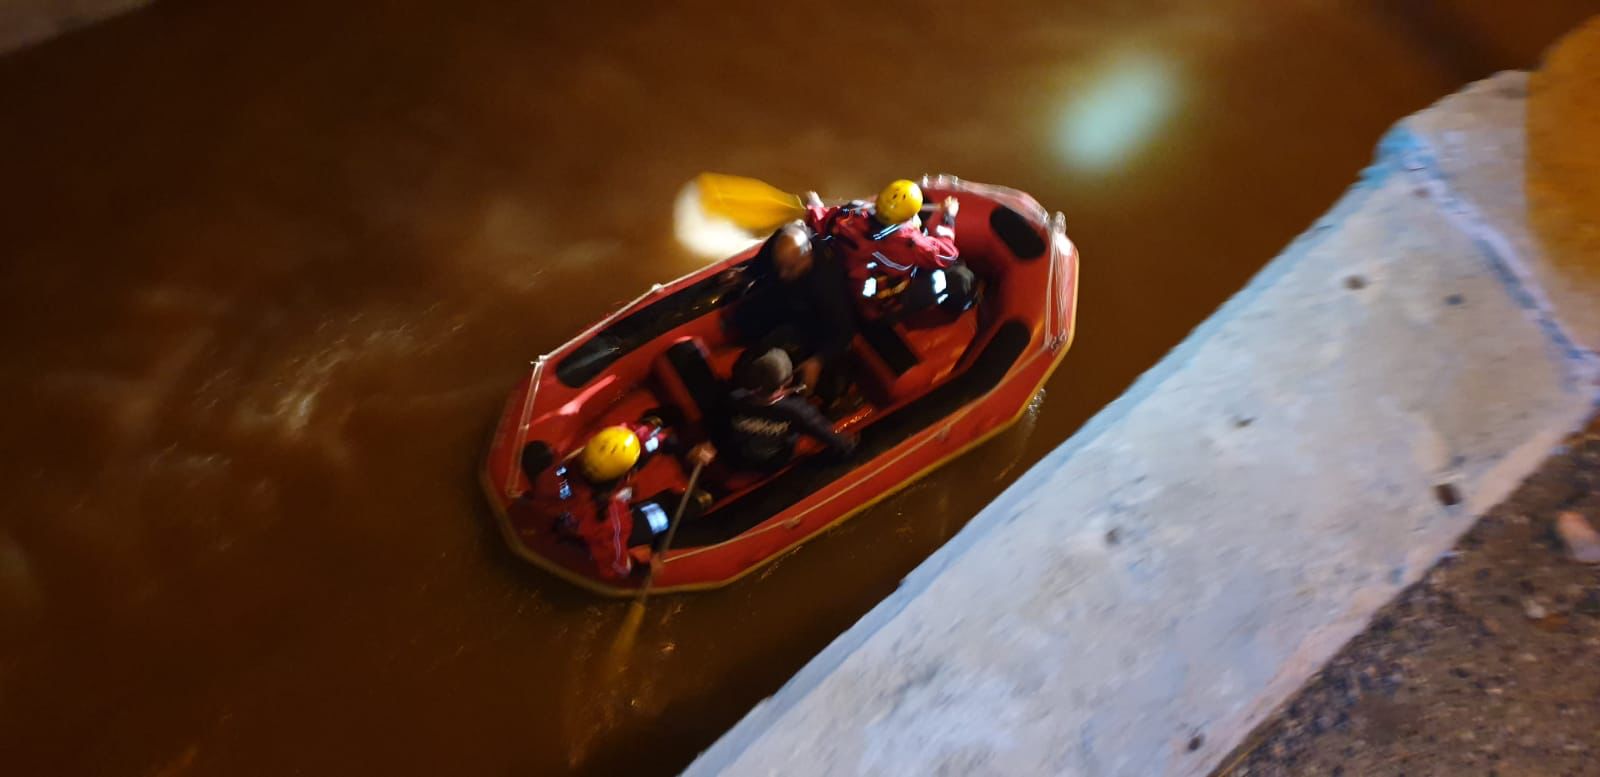 החילוץ באמצעות סירה. צילום: דוברות כבאות חדרה